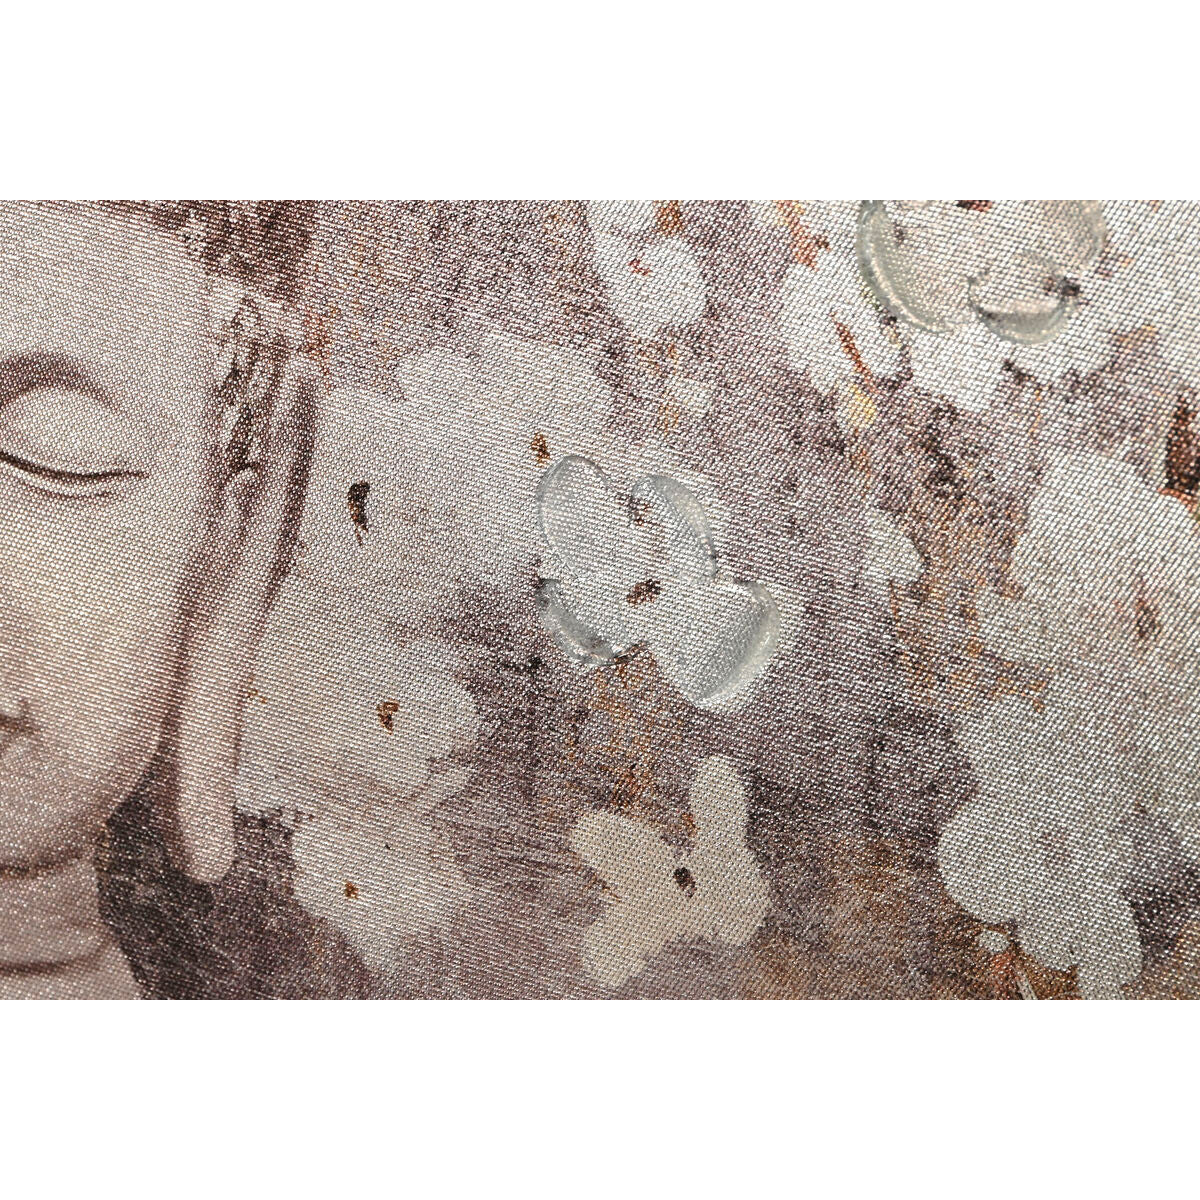 Schilderij Home ESPRIT Boeddha Orientaals 60 x 2,7 x 80 cm (2 Stuks)